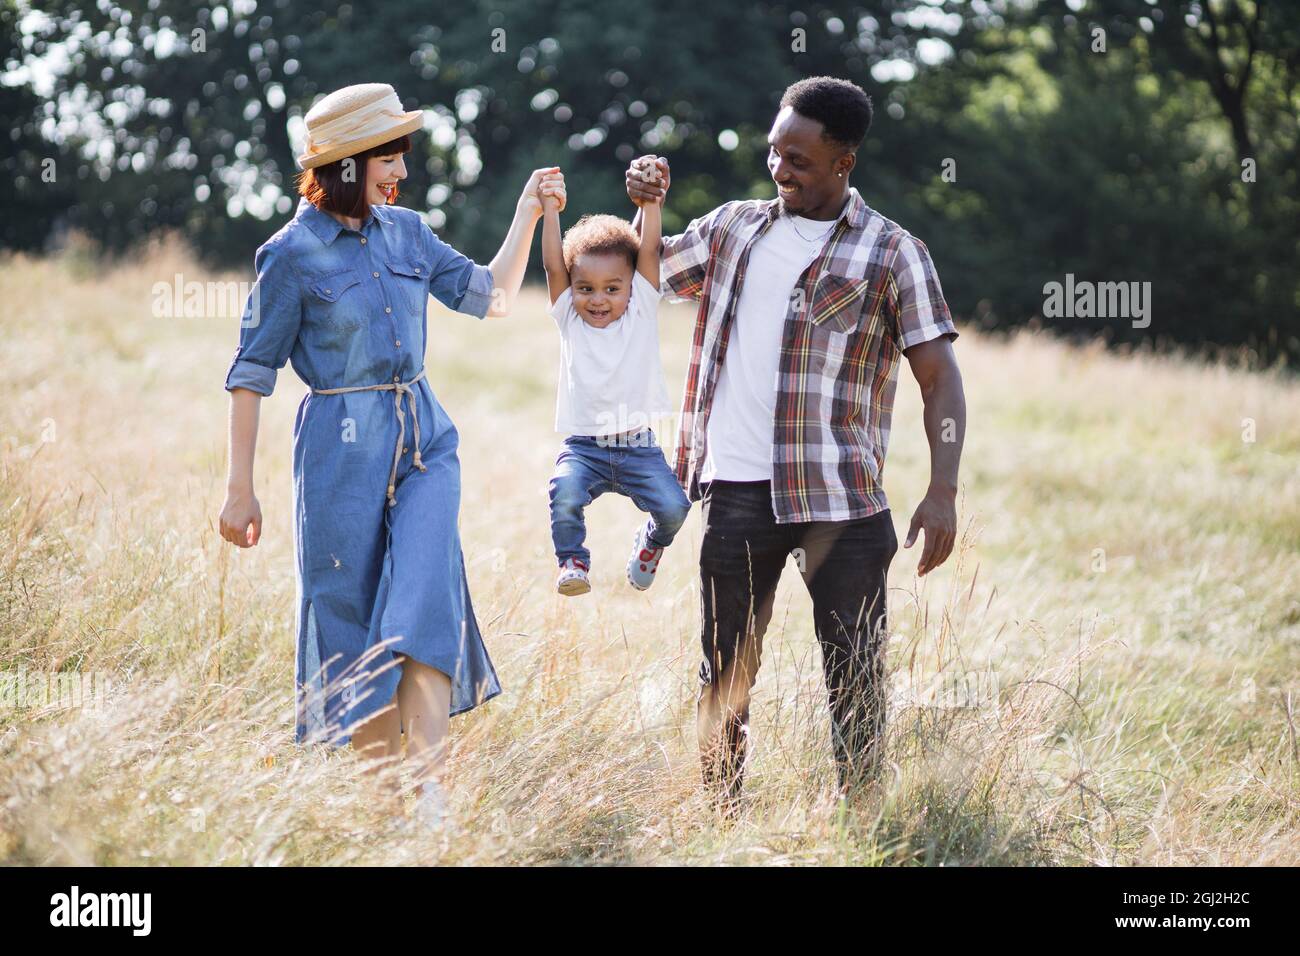 Fröhliche junge Eltern, die ihren Sohn für beide Hände aufziehen, während sie zusammen auf dem Sommerfeld spielen. Multirassische Familie in legerem Outfit, die jeden Moment zusammen verbringt. Stockfoto